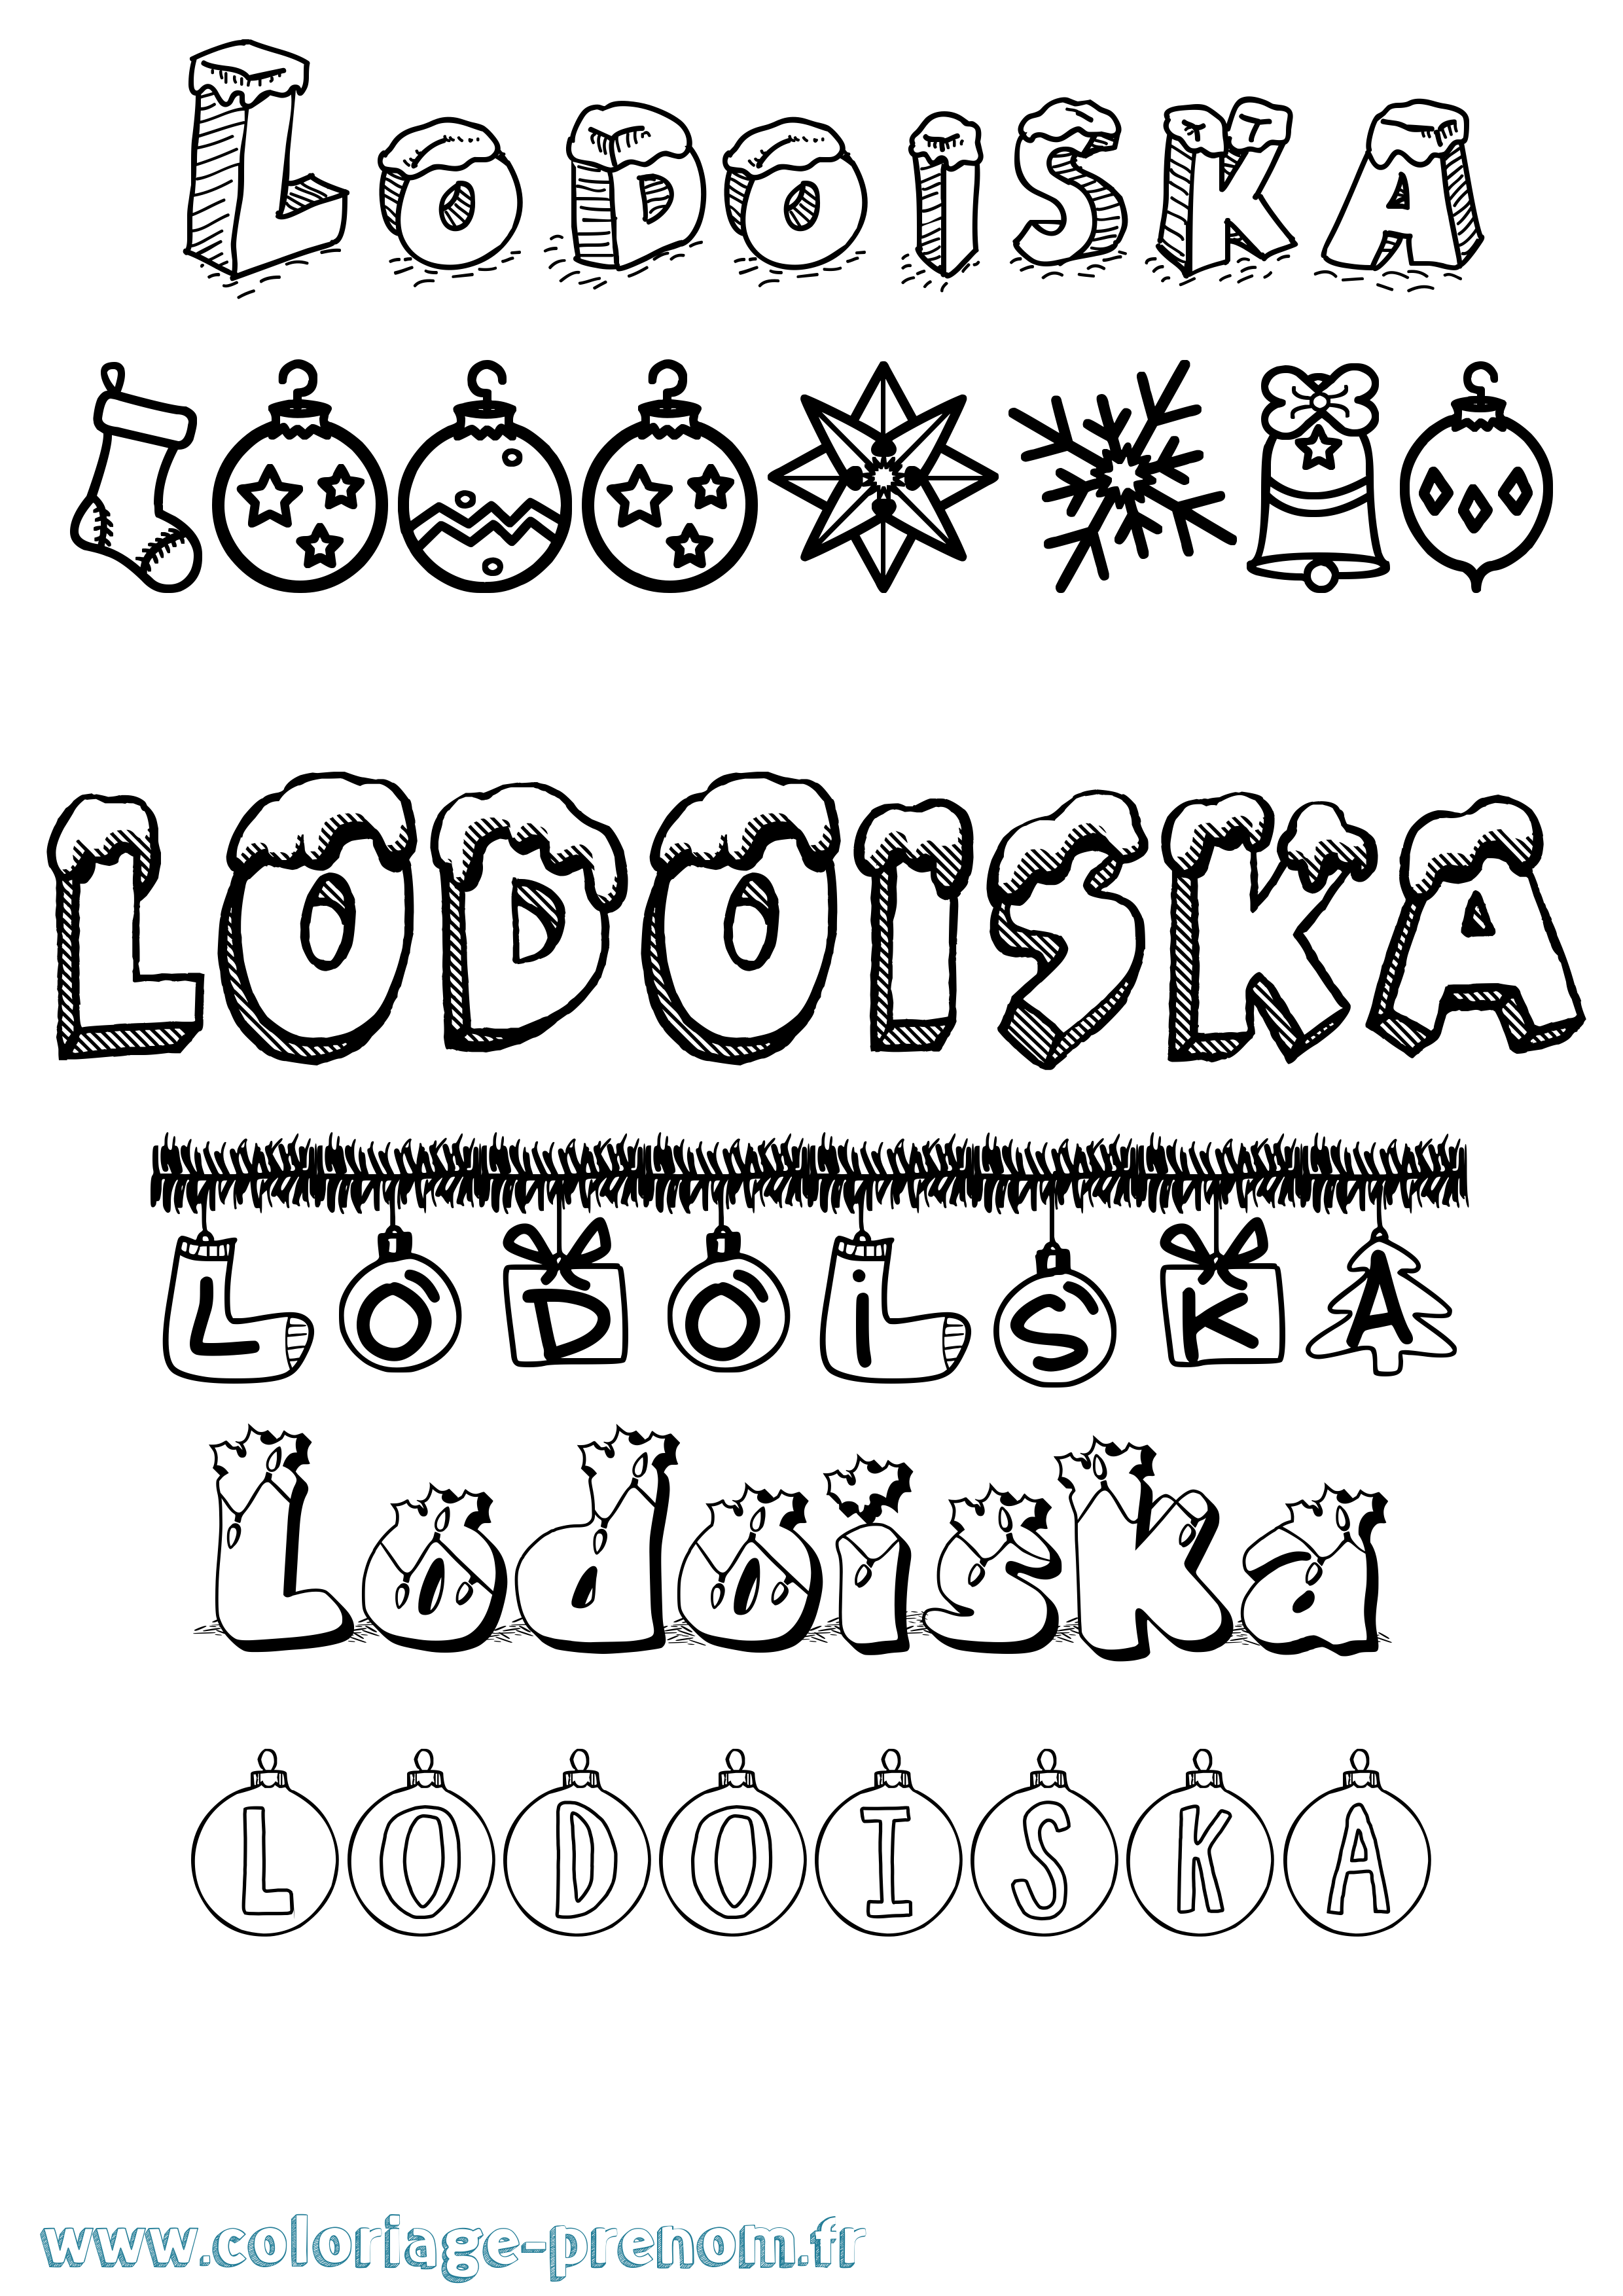 Coloriage prénom Lodoiska Noël